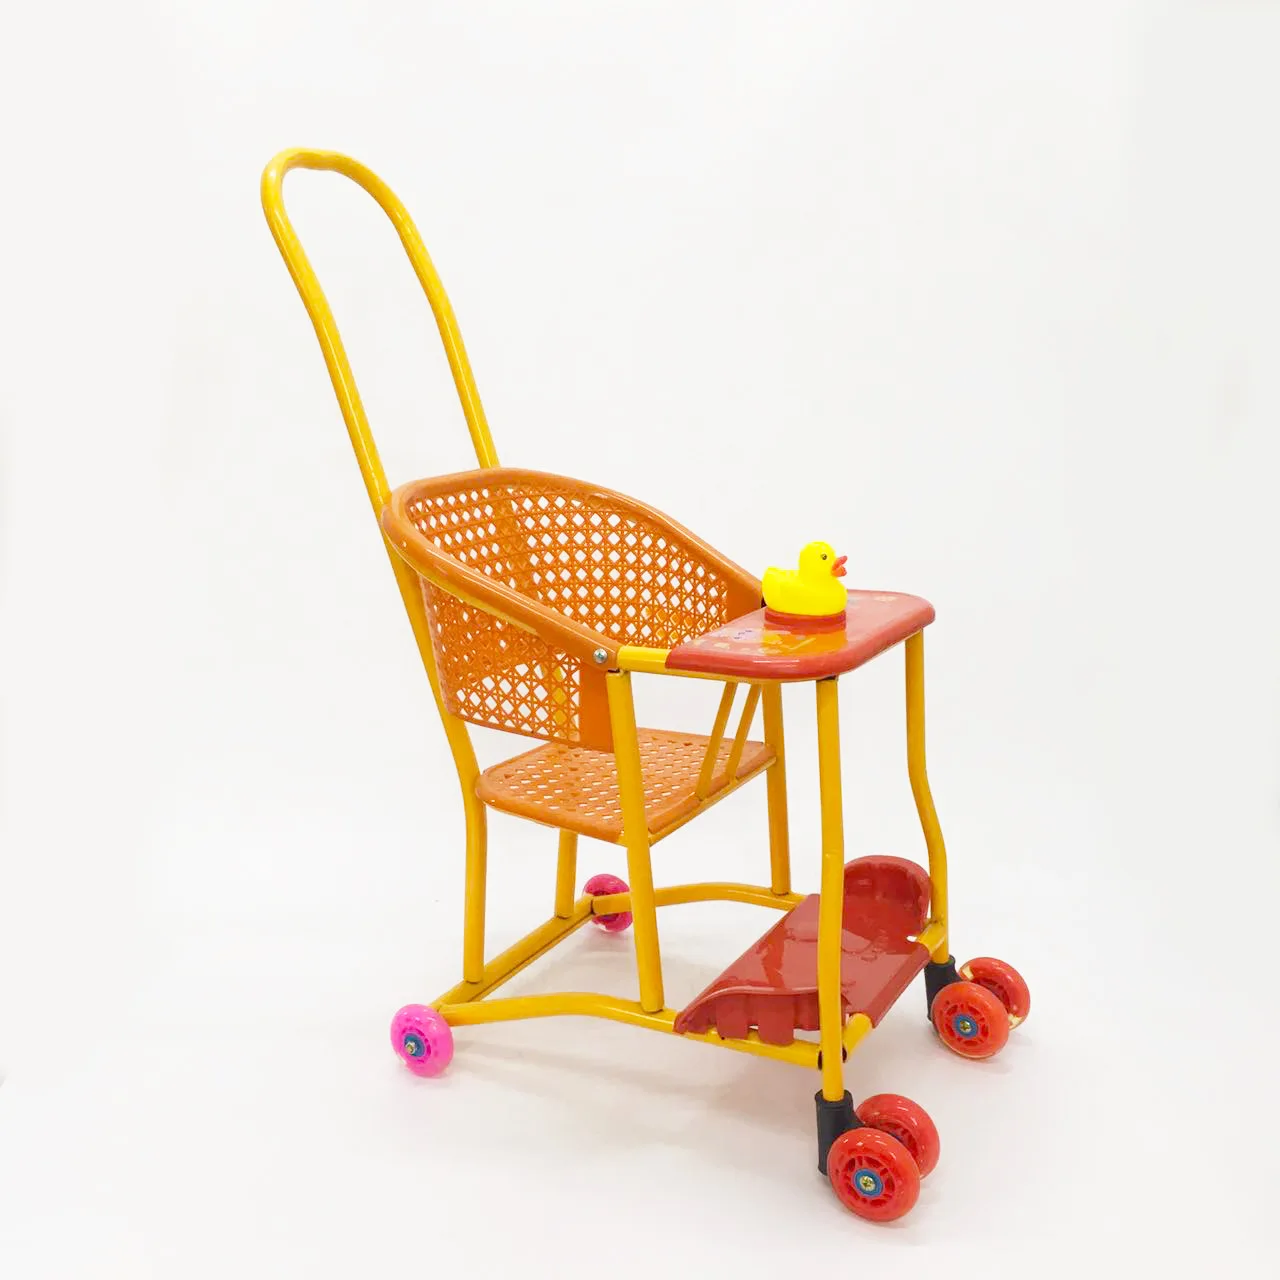 Ультра-легкая Китайская традиционная имитация ротанга детская коляска универсальный колесо малыша тролли